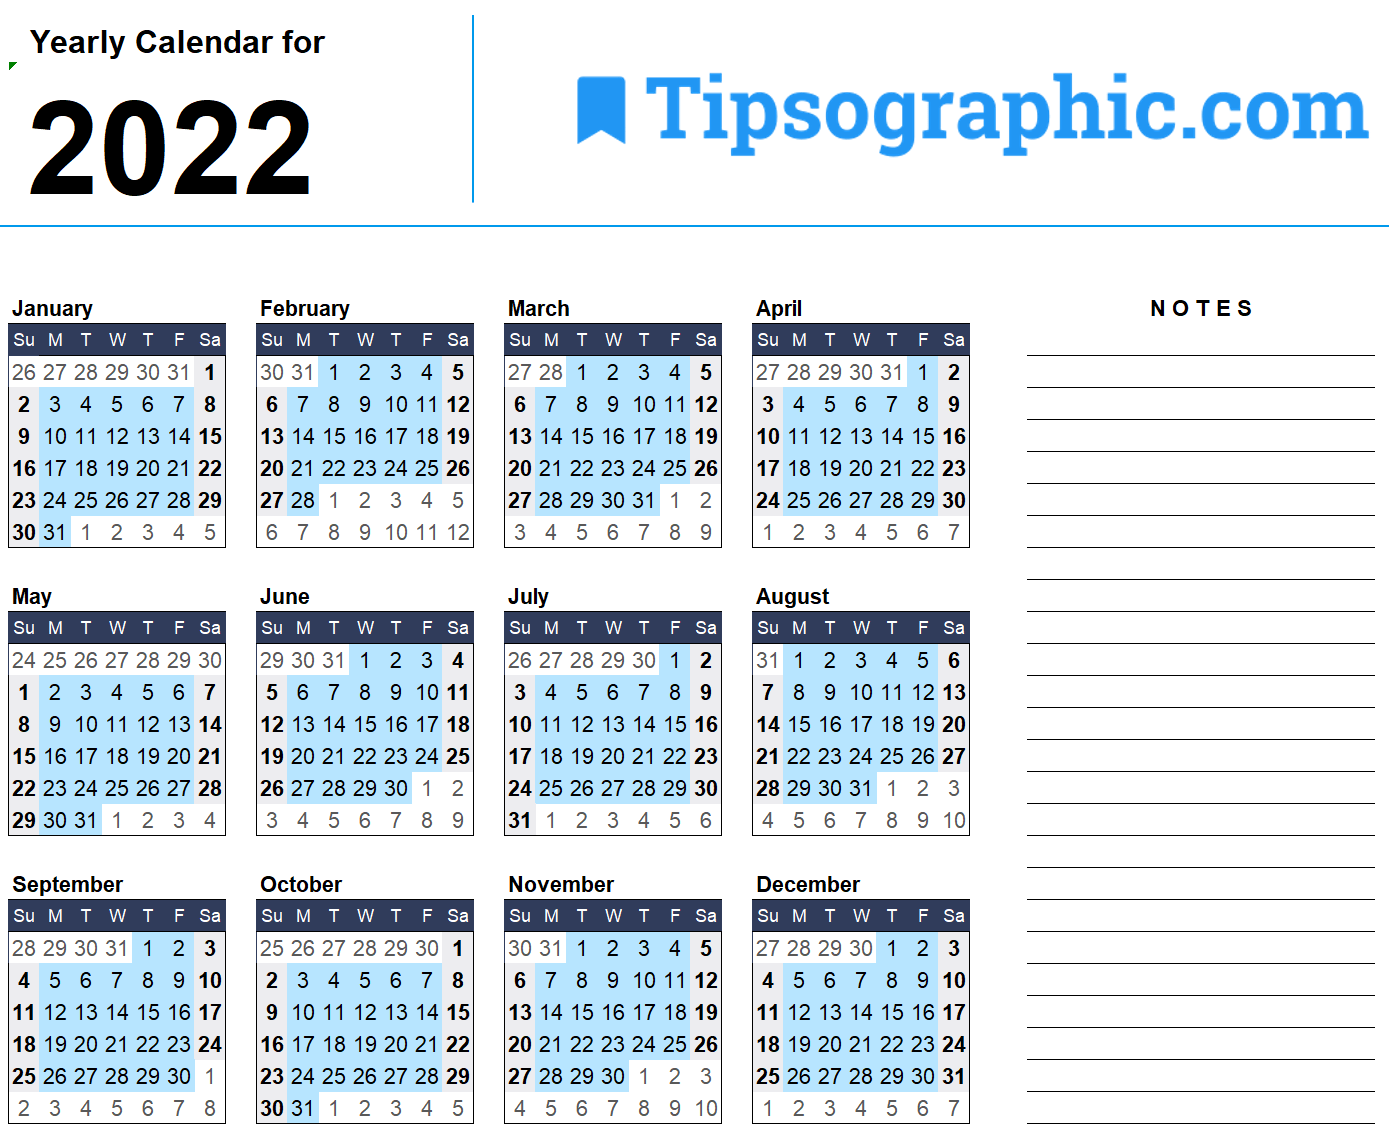 kalender 2022 excel gratis download